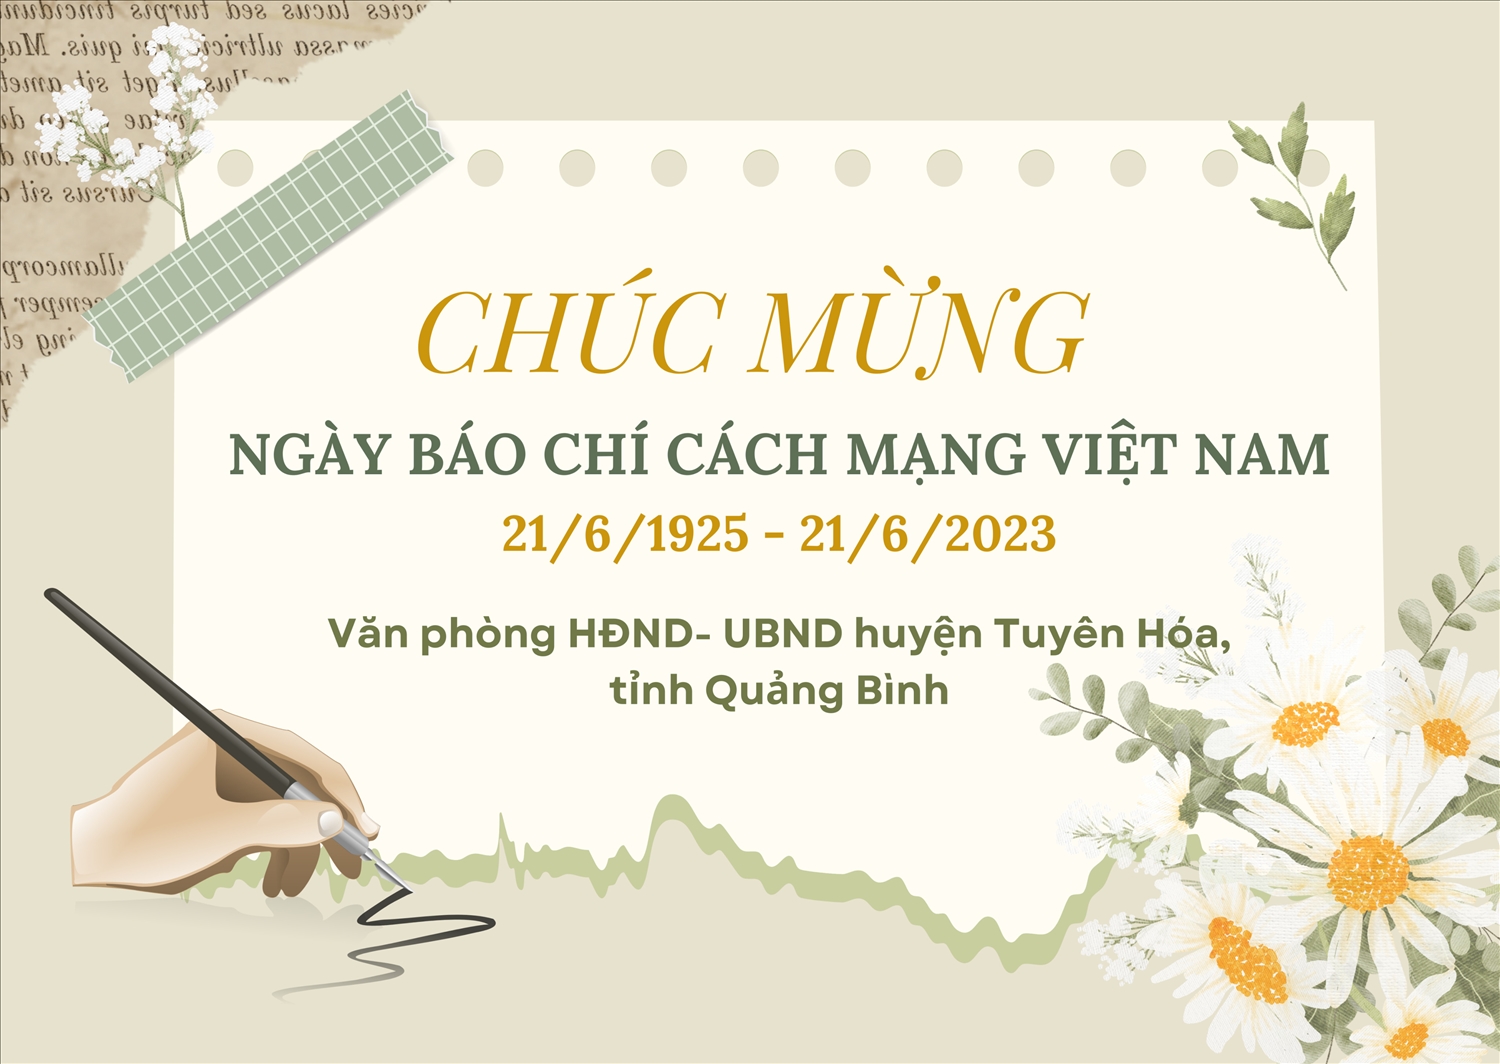  (QC 21/6) Văn phòng HĐND- UBND huyện Tuyên Hóa (Quảng Bình) chúc mừng Ngày Báo chí Cách mạng Việt Nam (21/6/1925/21/6/2023)